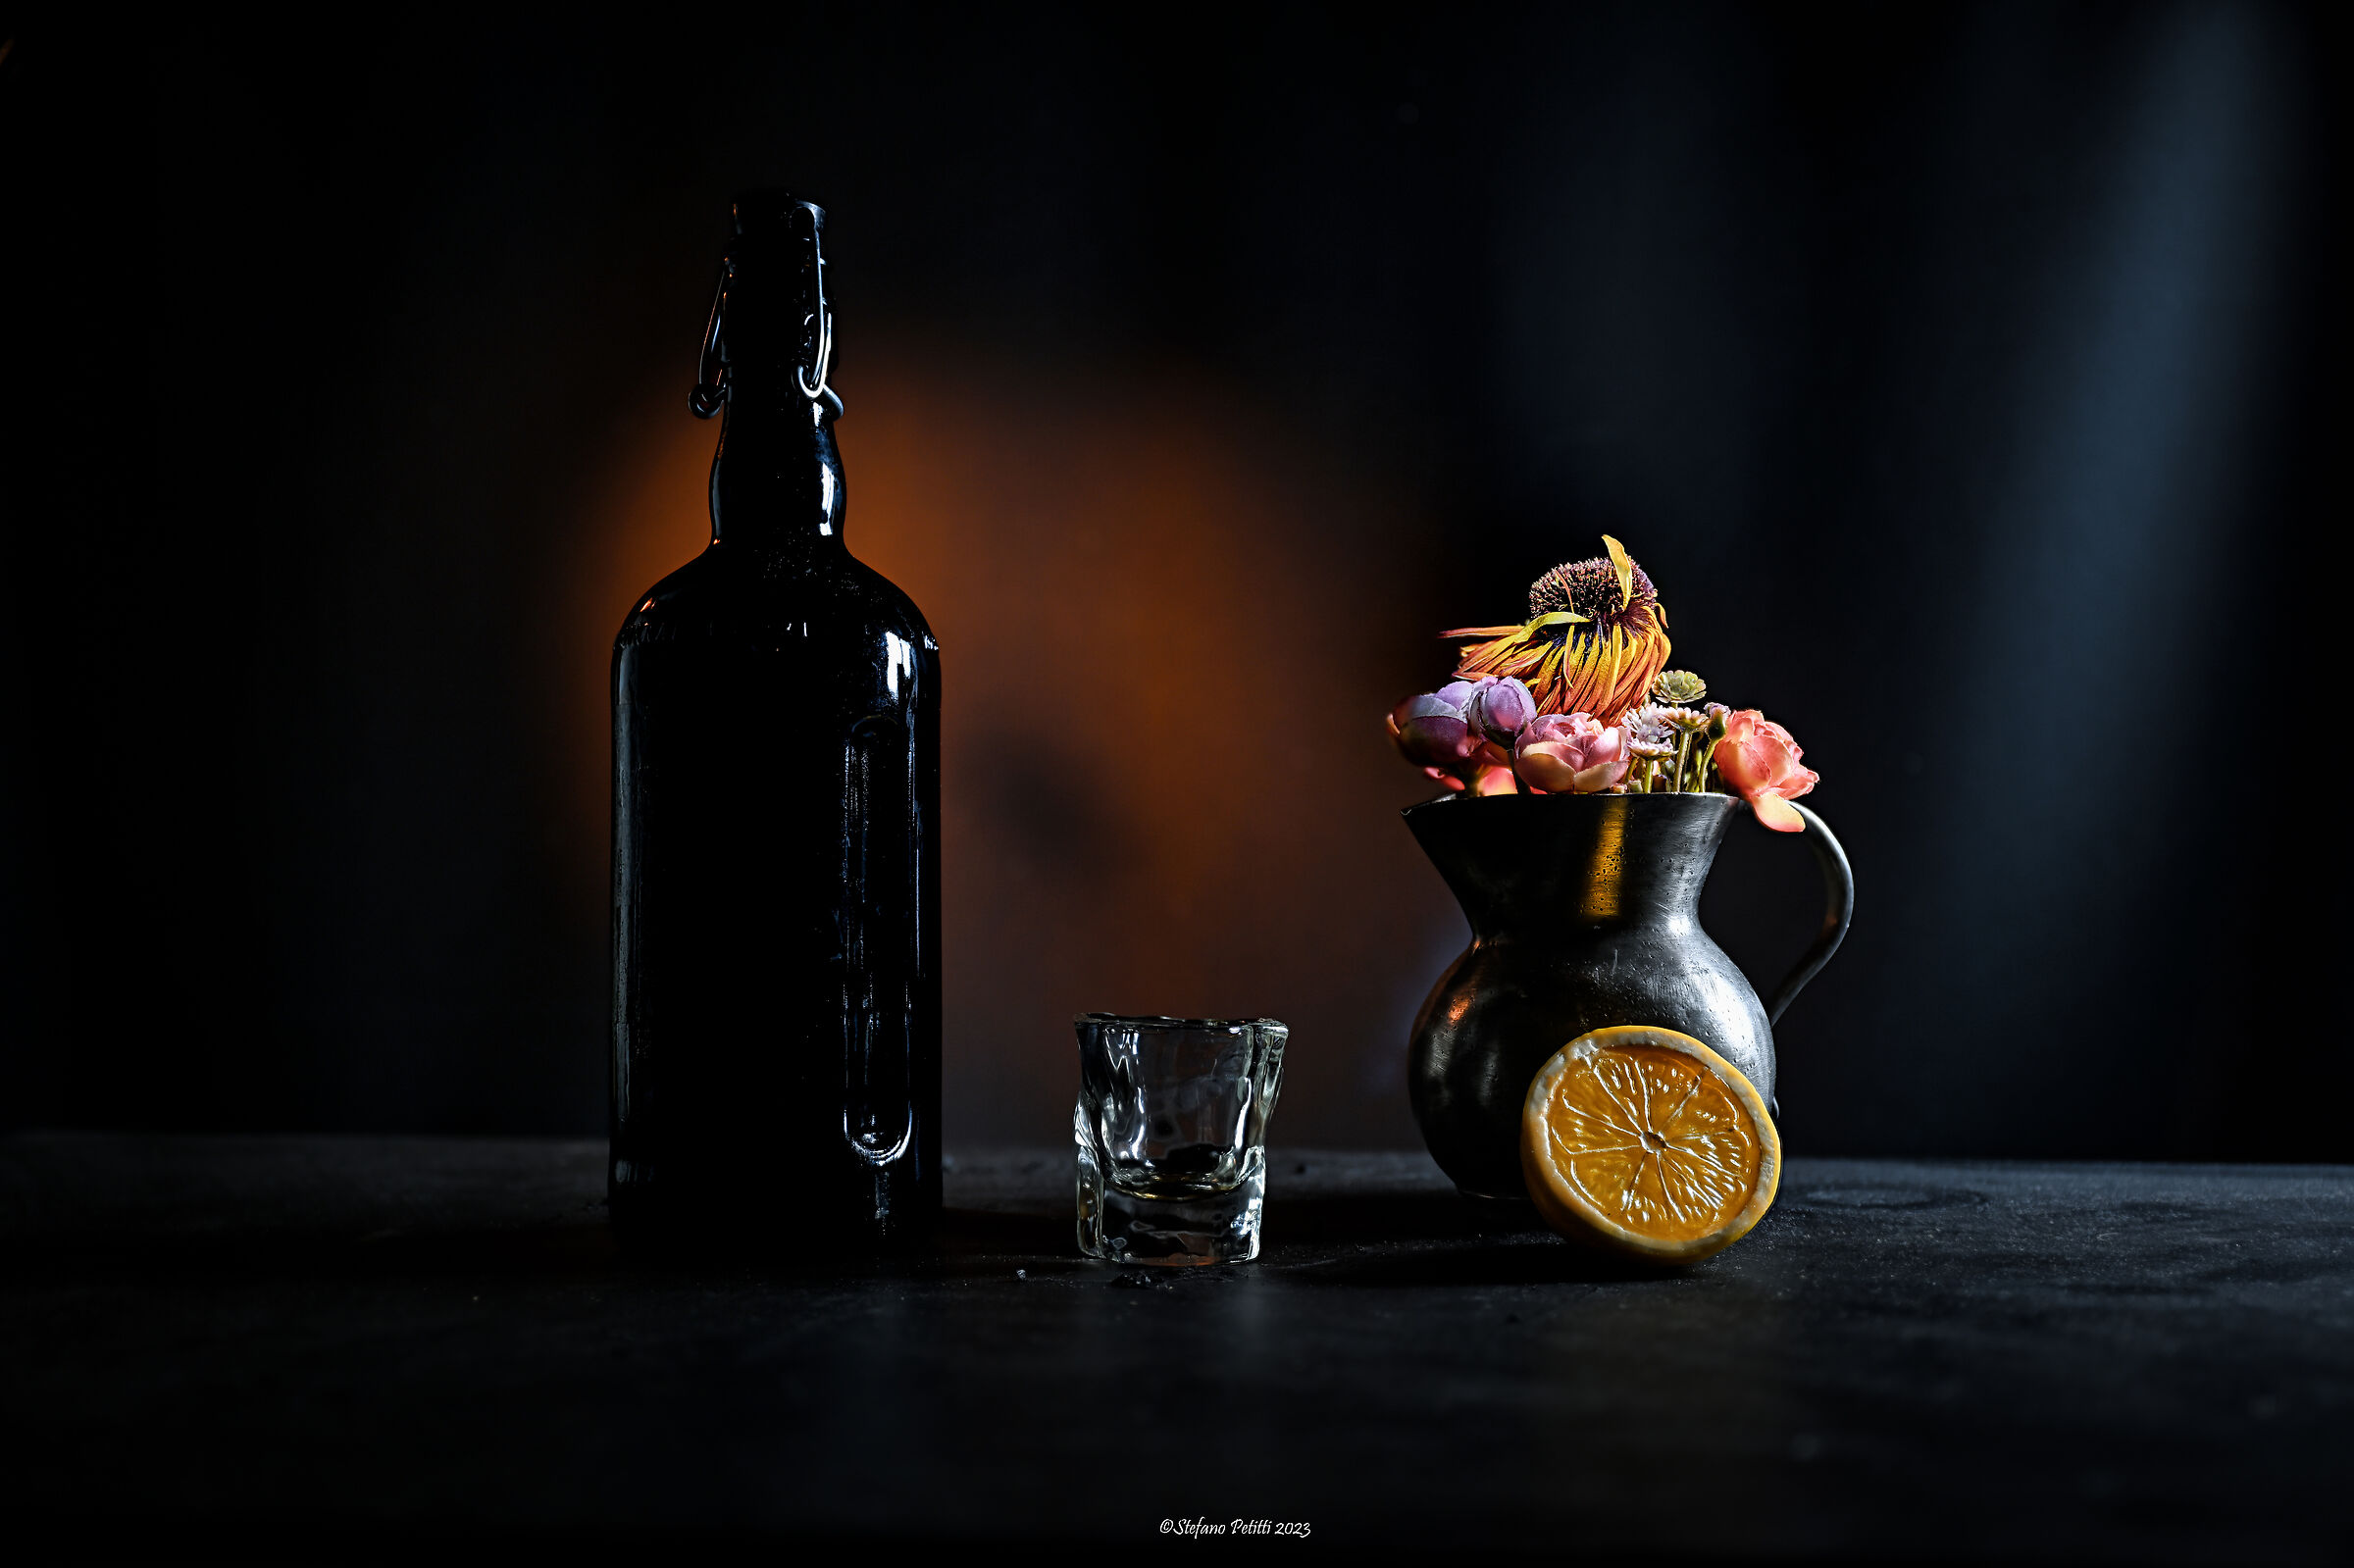 Bottle, glass & flower...